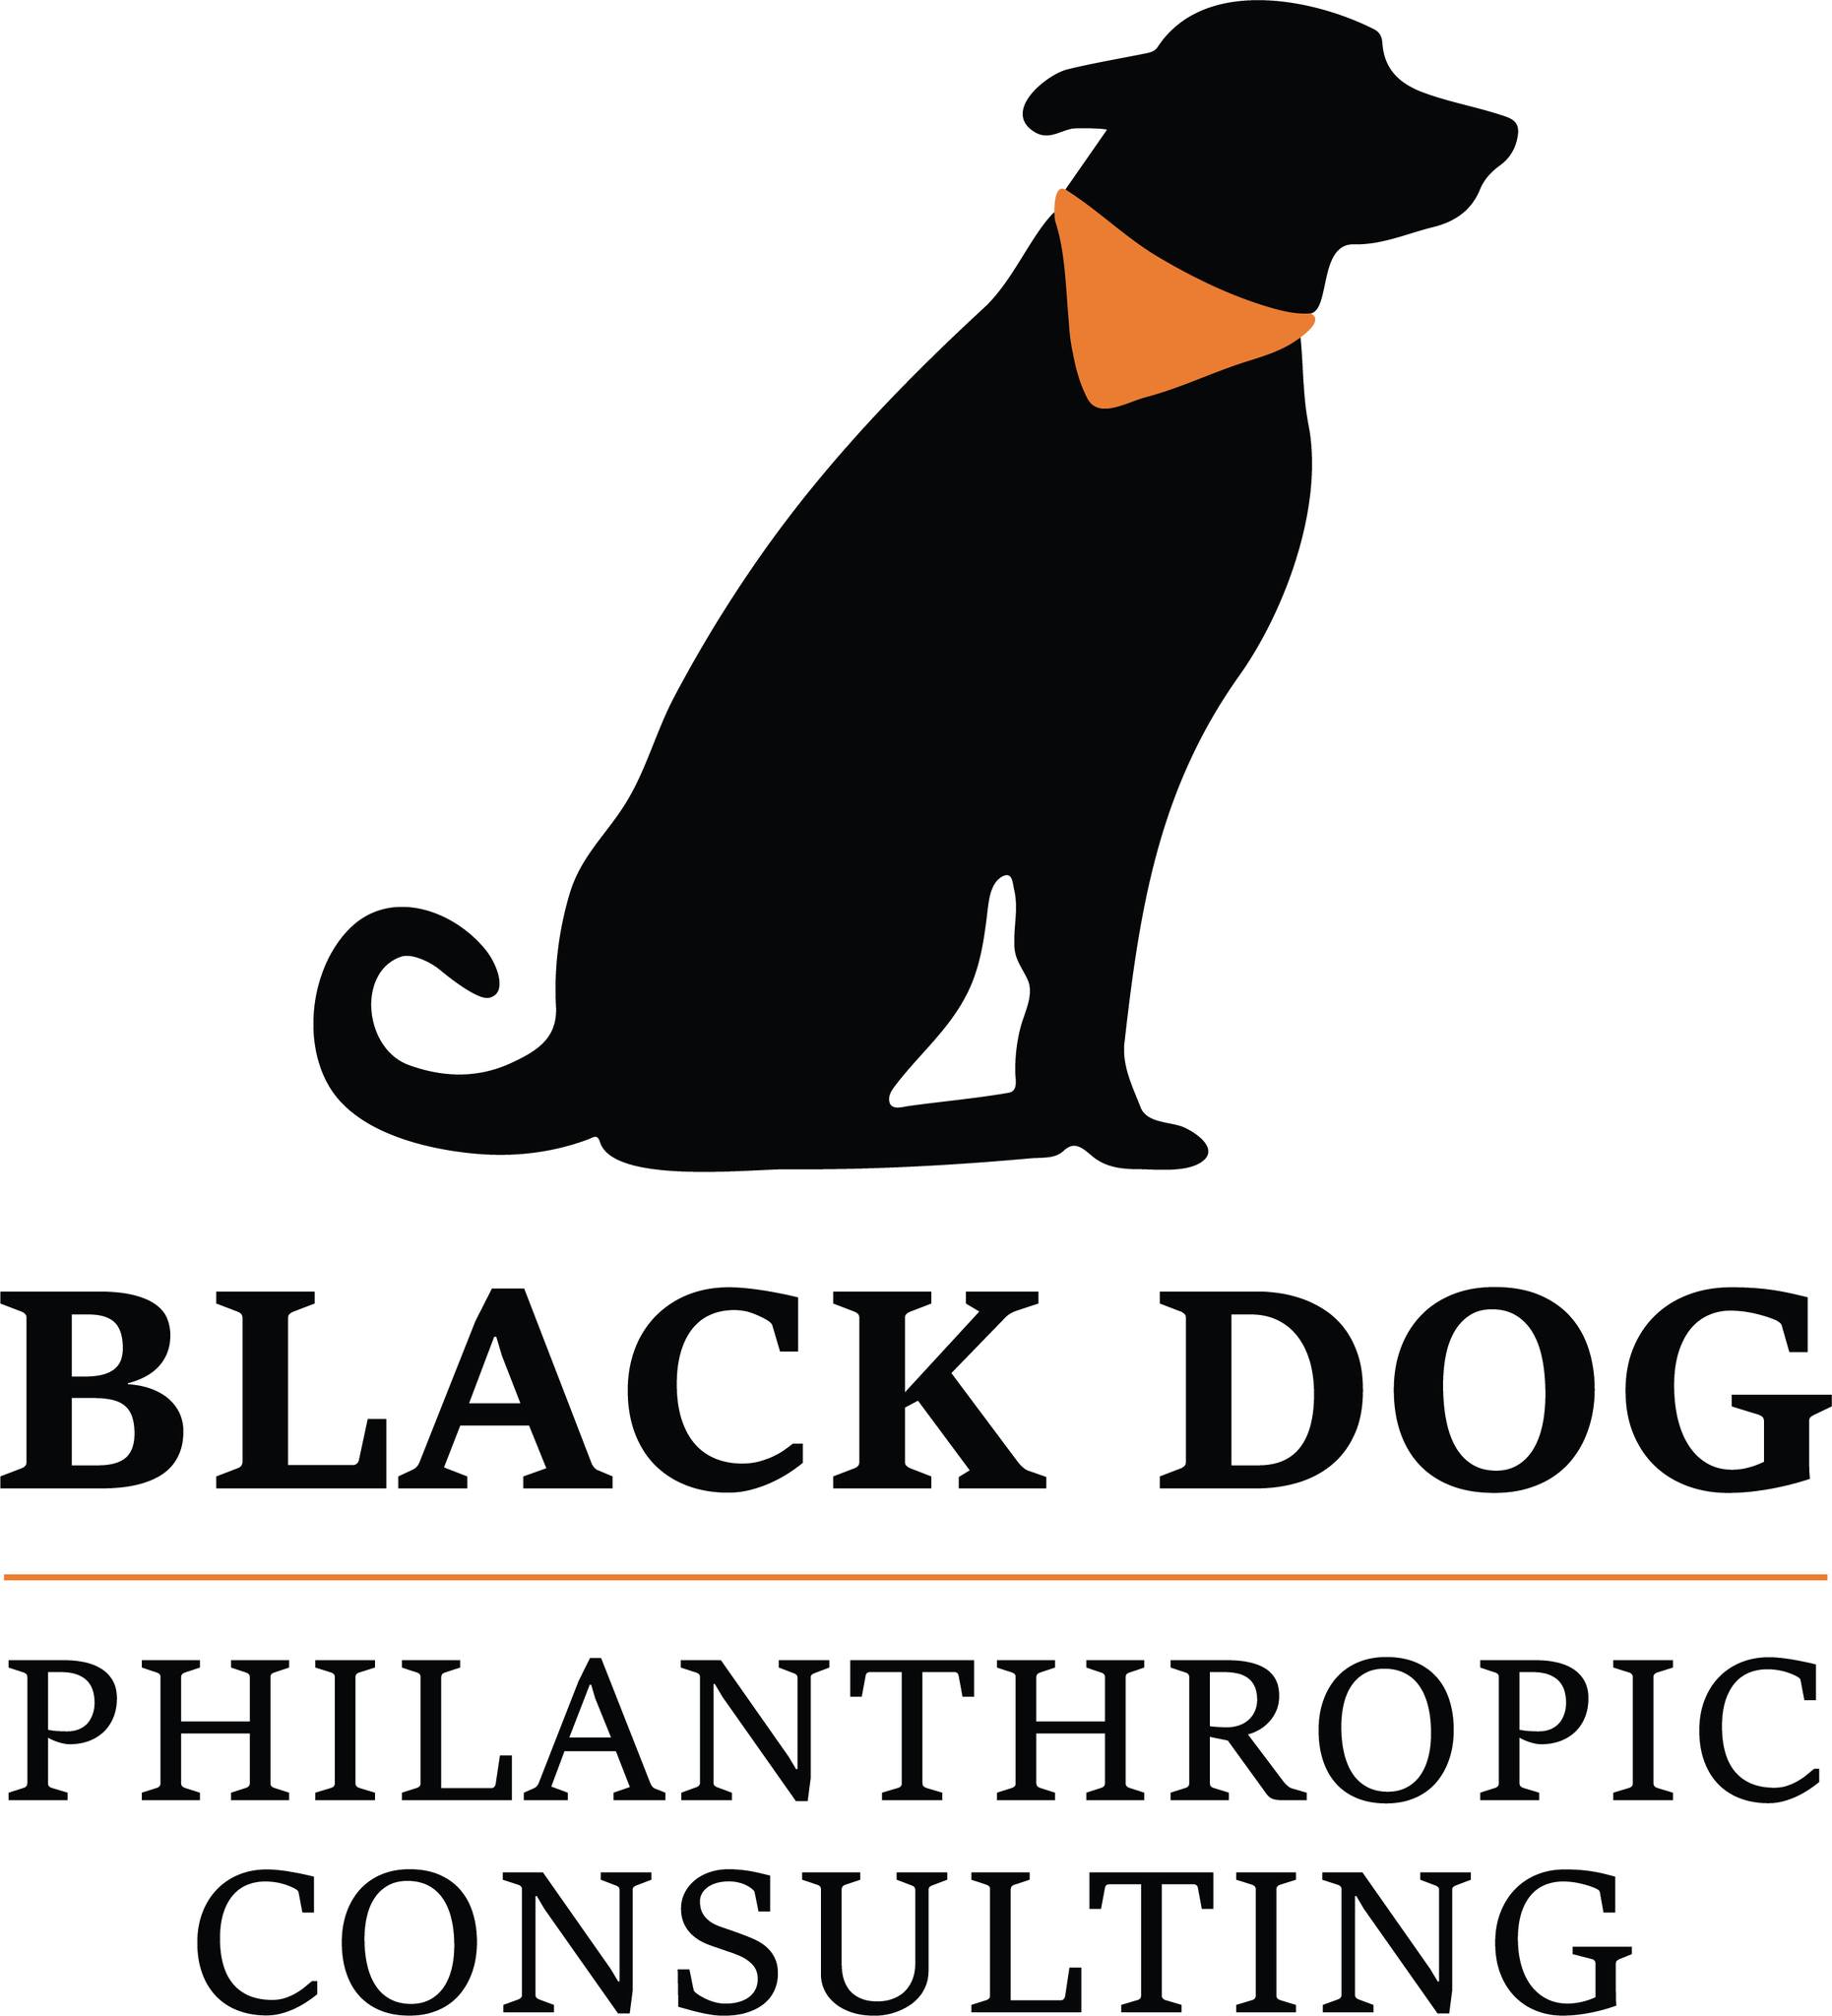 Black Dog Philanthropic Consulting